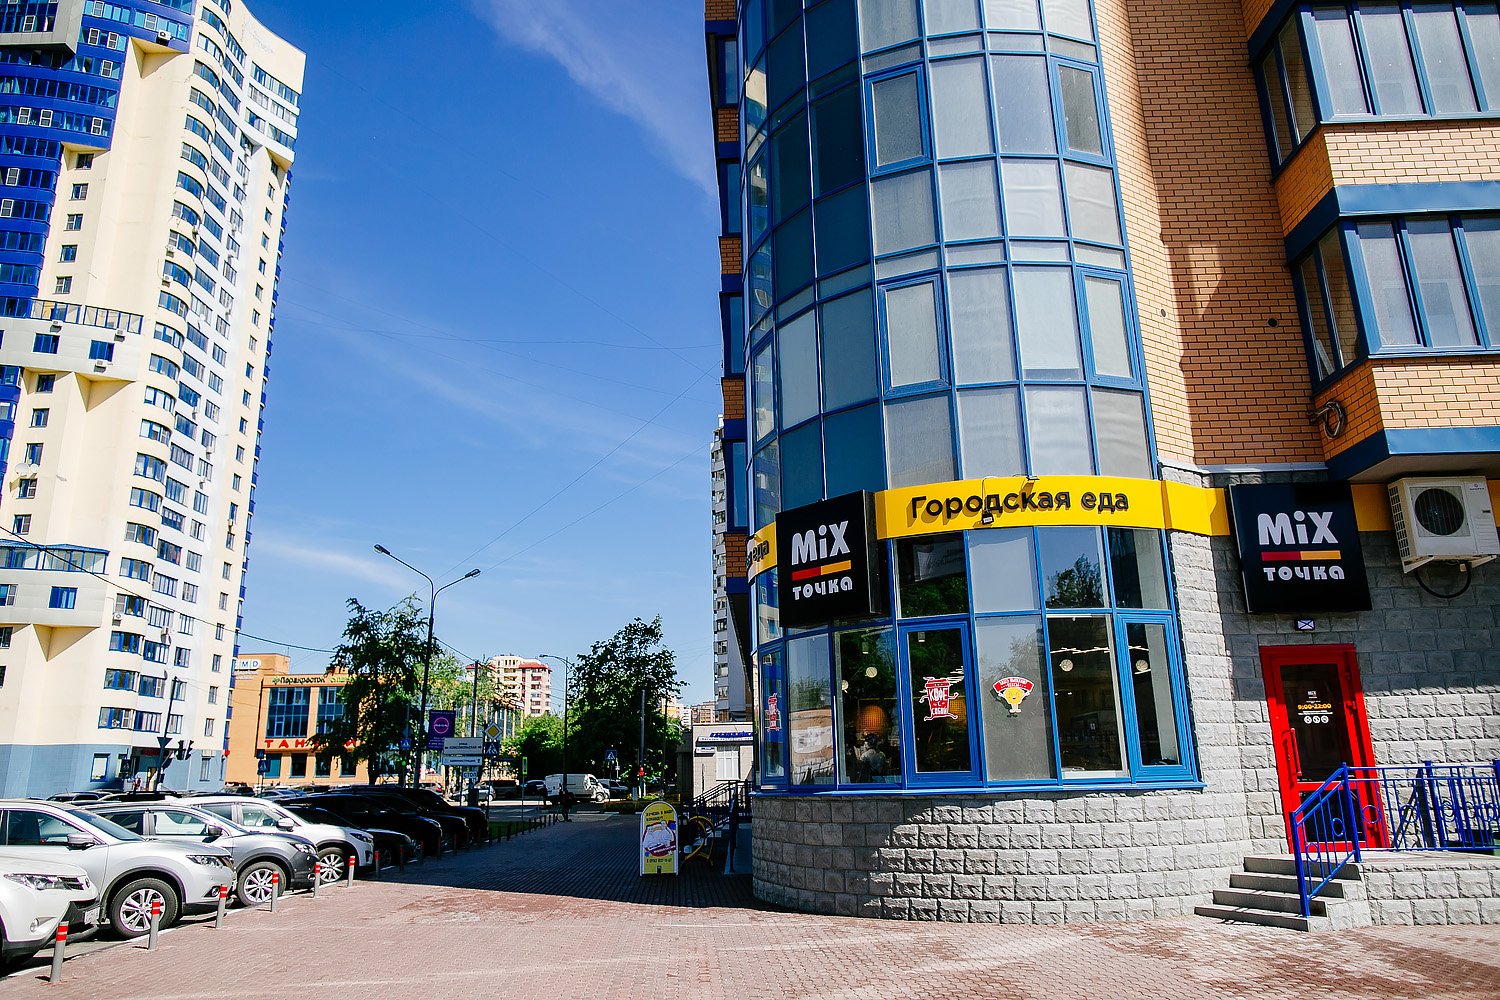 MIX ТОЧКА, сеть кафе быстрого питания, Комсомольская, 2 (1 этаж)